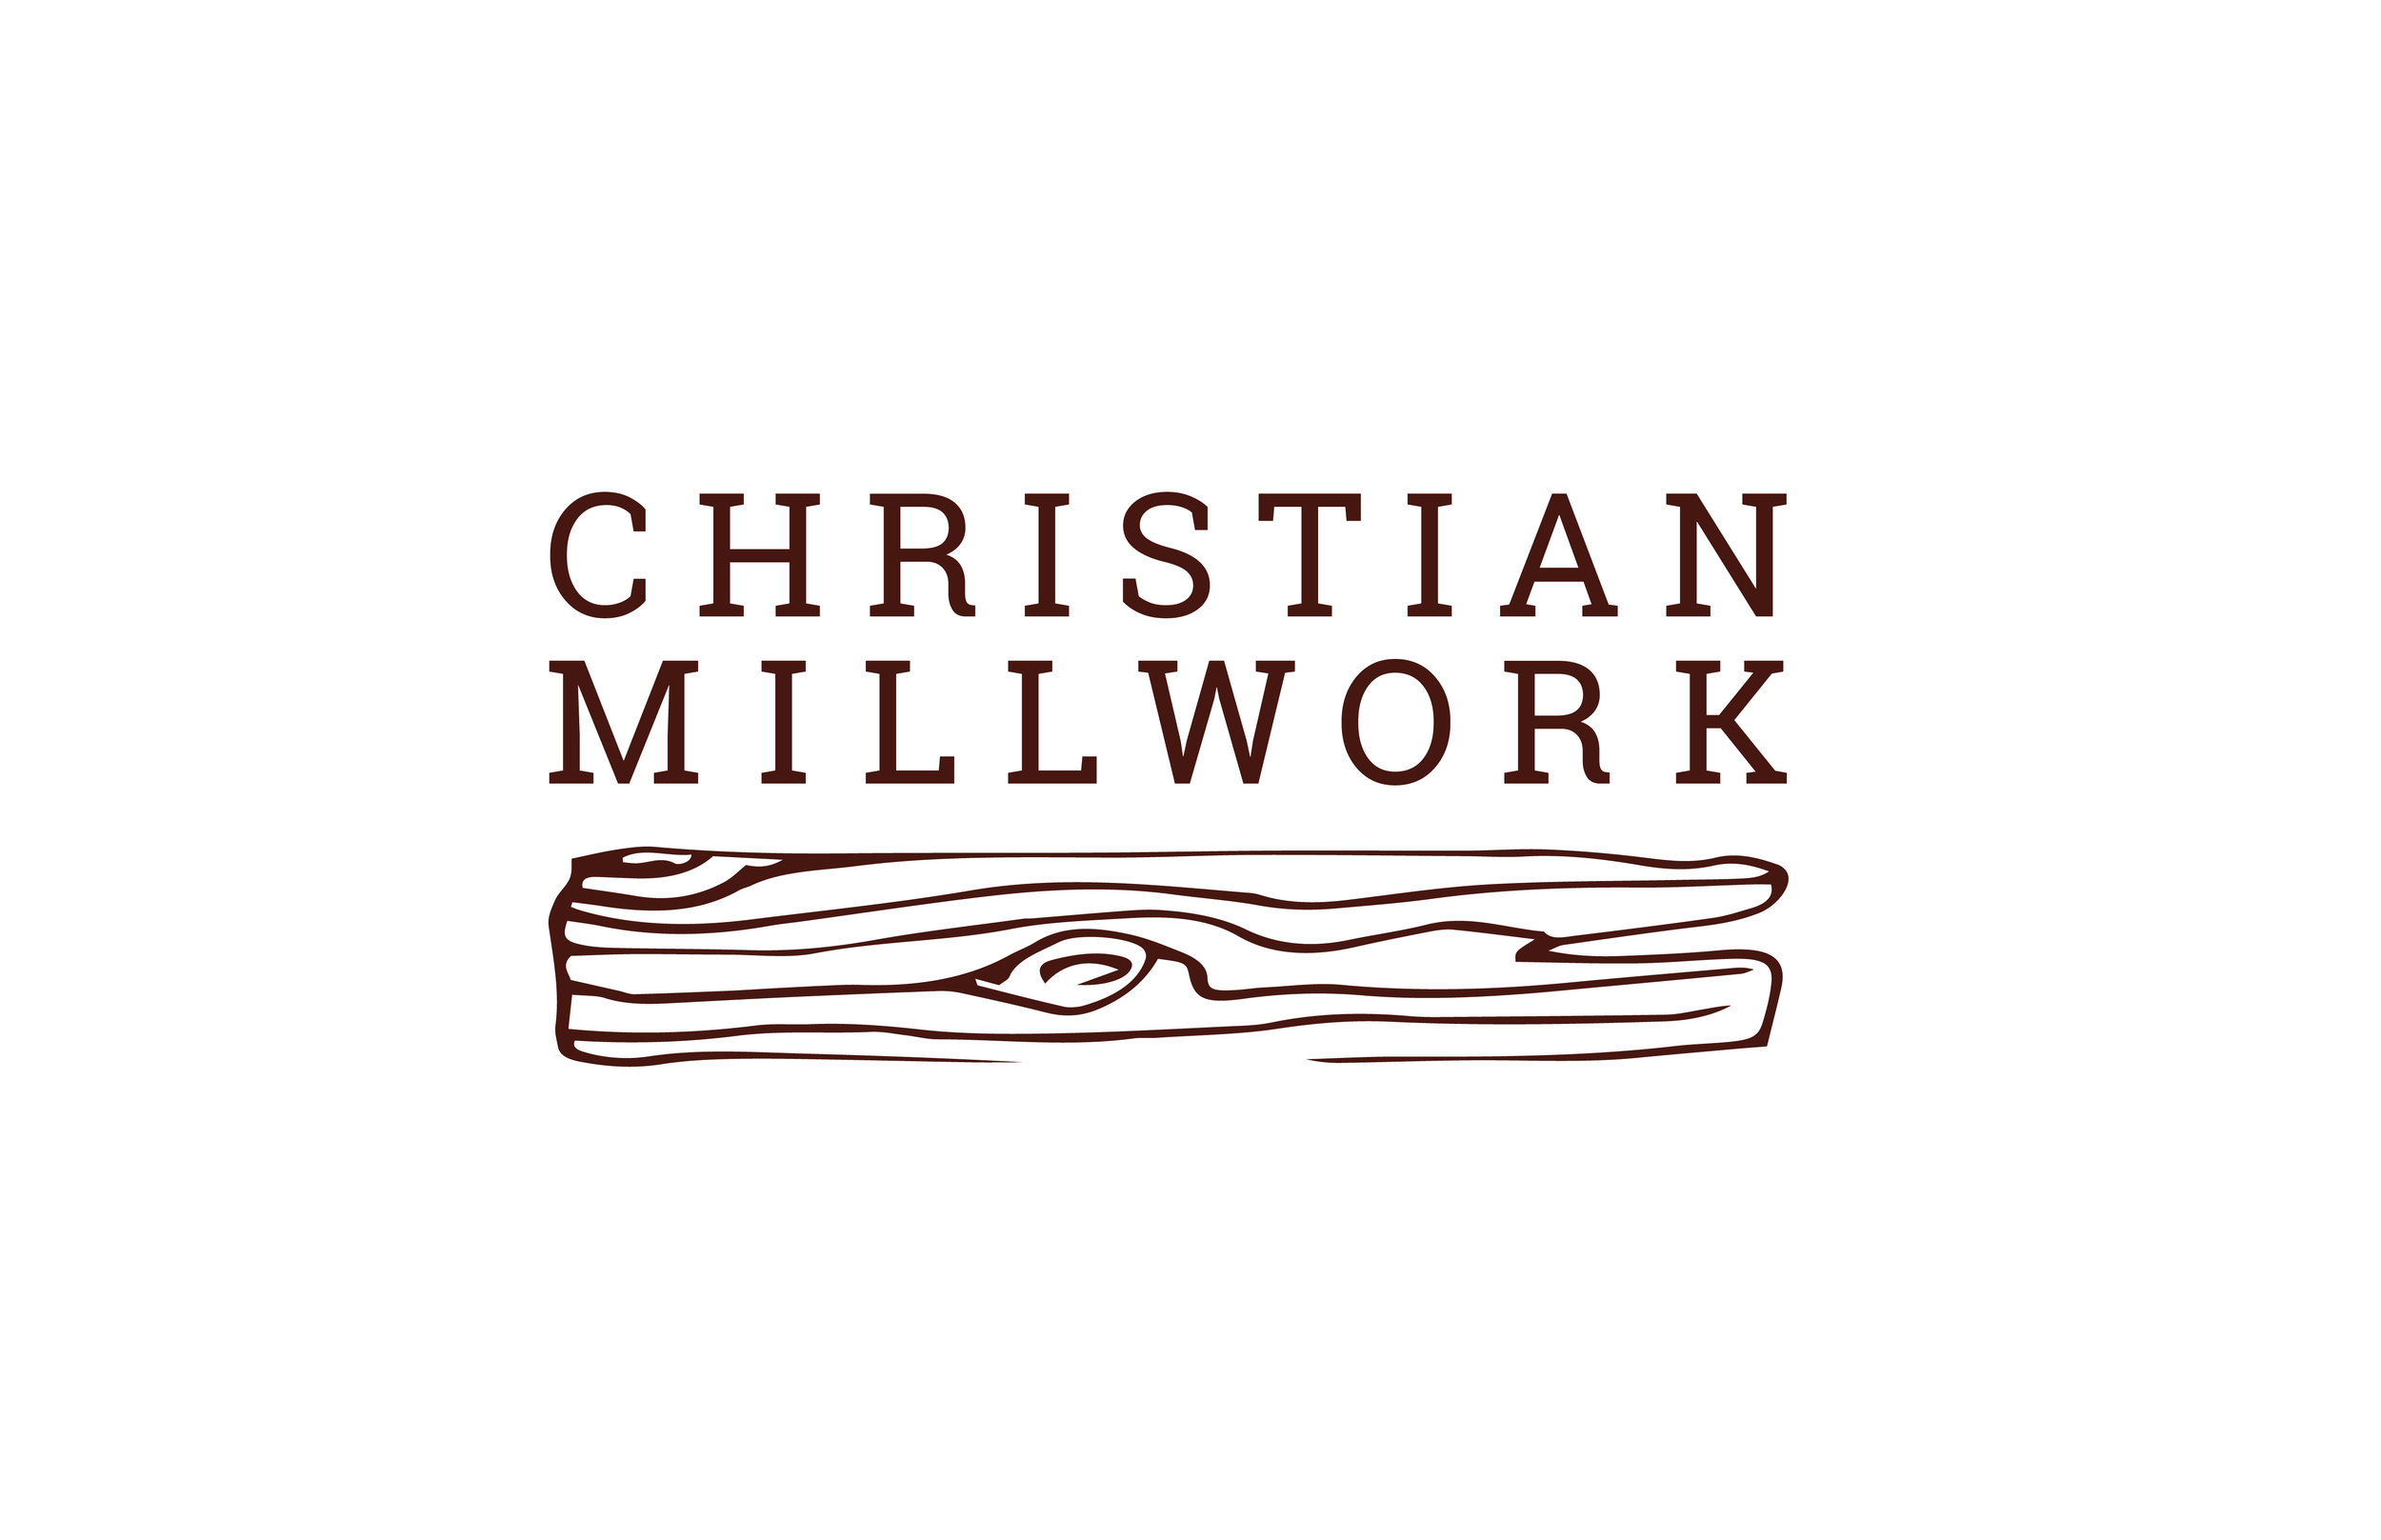 CHRISTIAN MILLWORK BRANDING